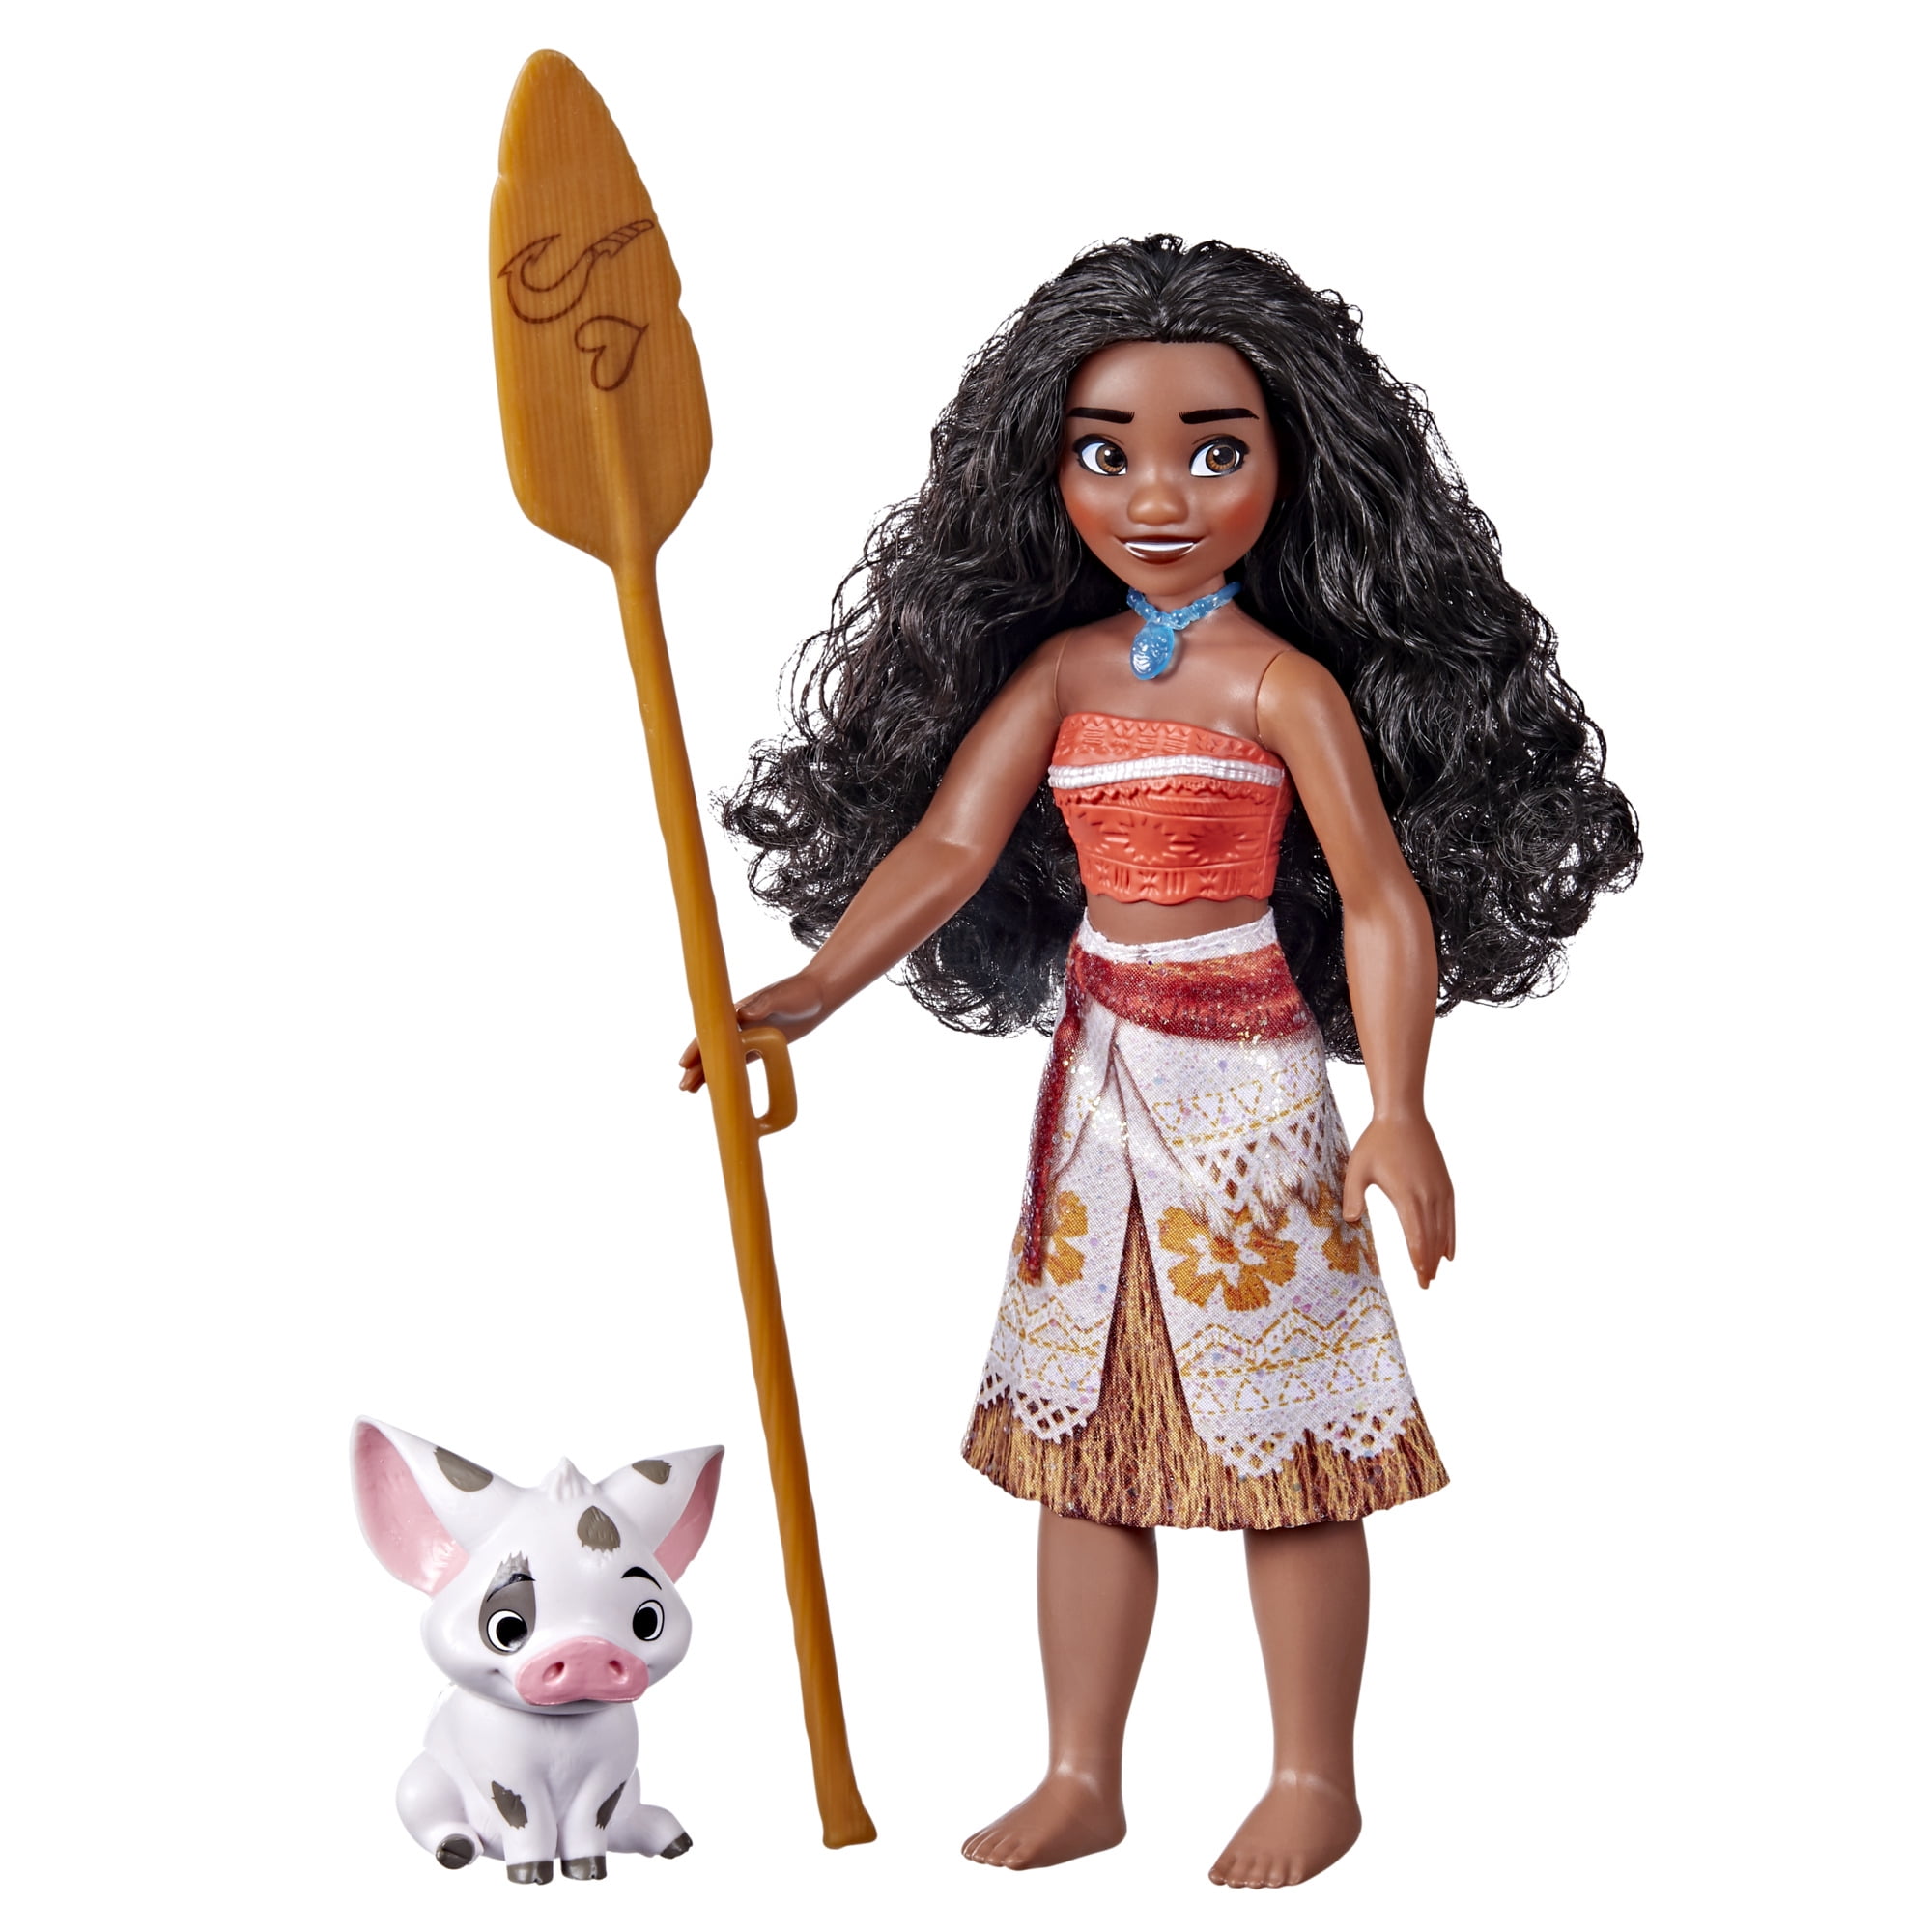 Disney Moana of Oceania Adventures with Maui The Demigod - Walmart.com